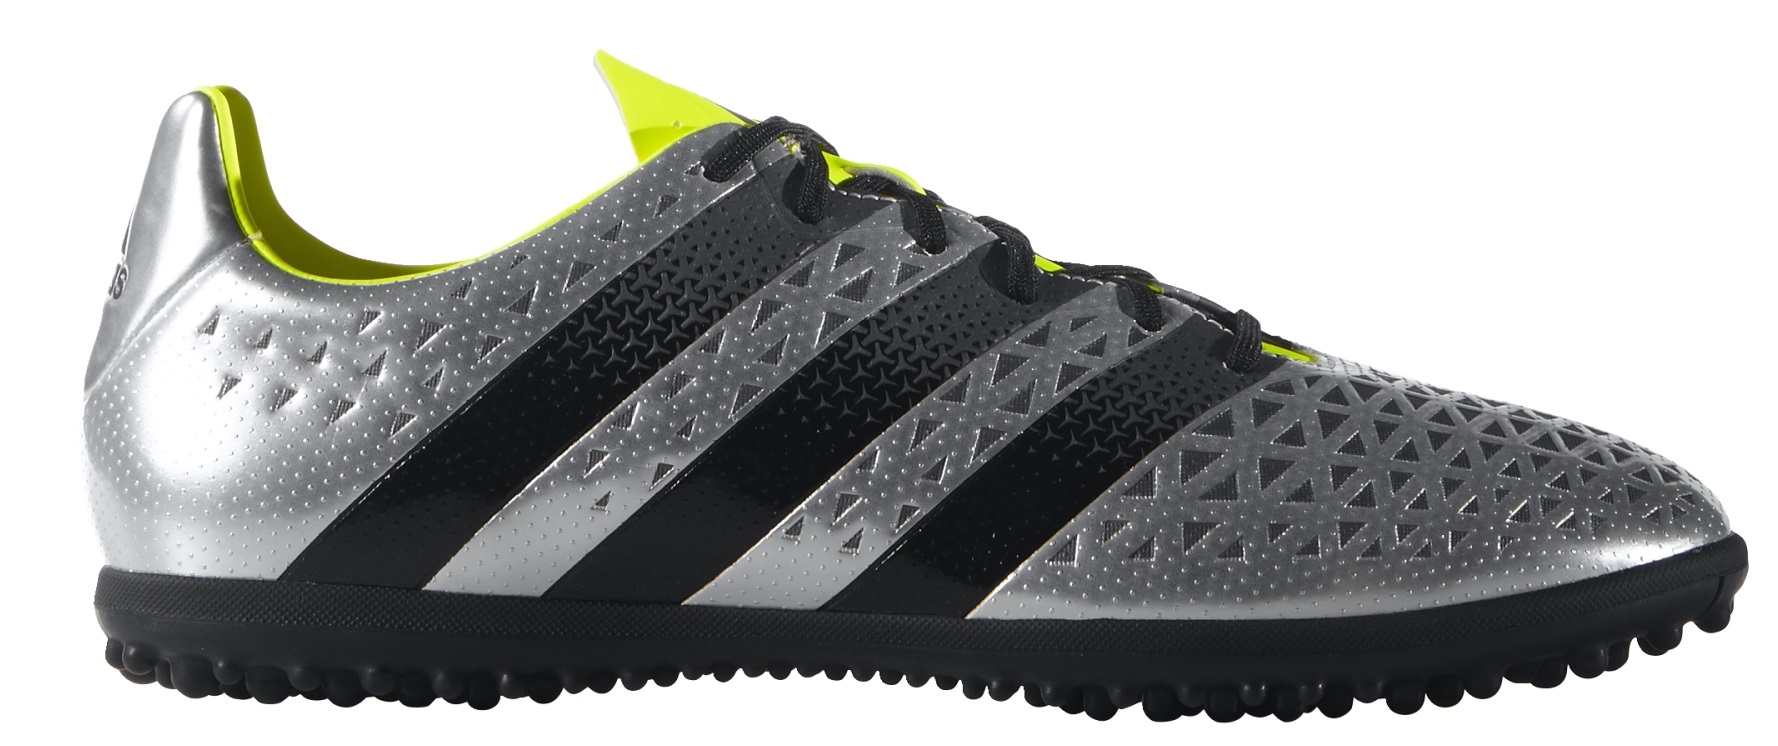 Zapatos de Adidas Ace 16.3 TF colore plata negro - Adidas - SportIT.com